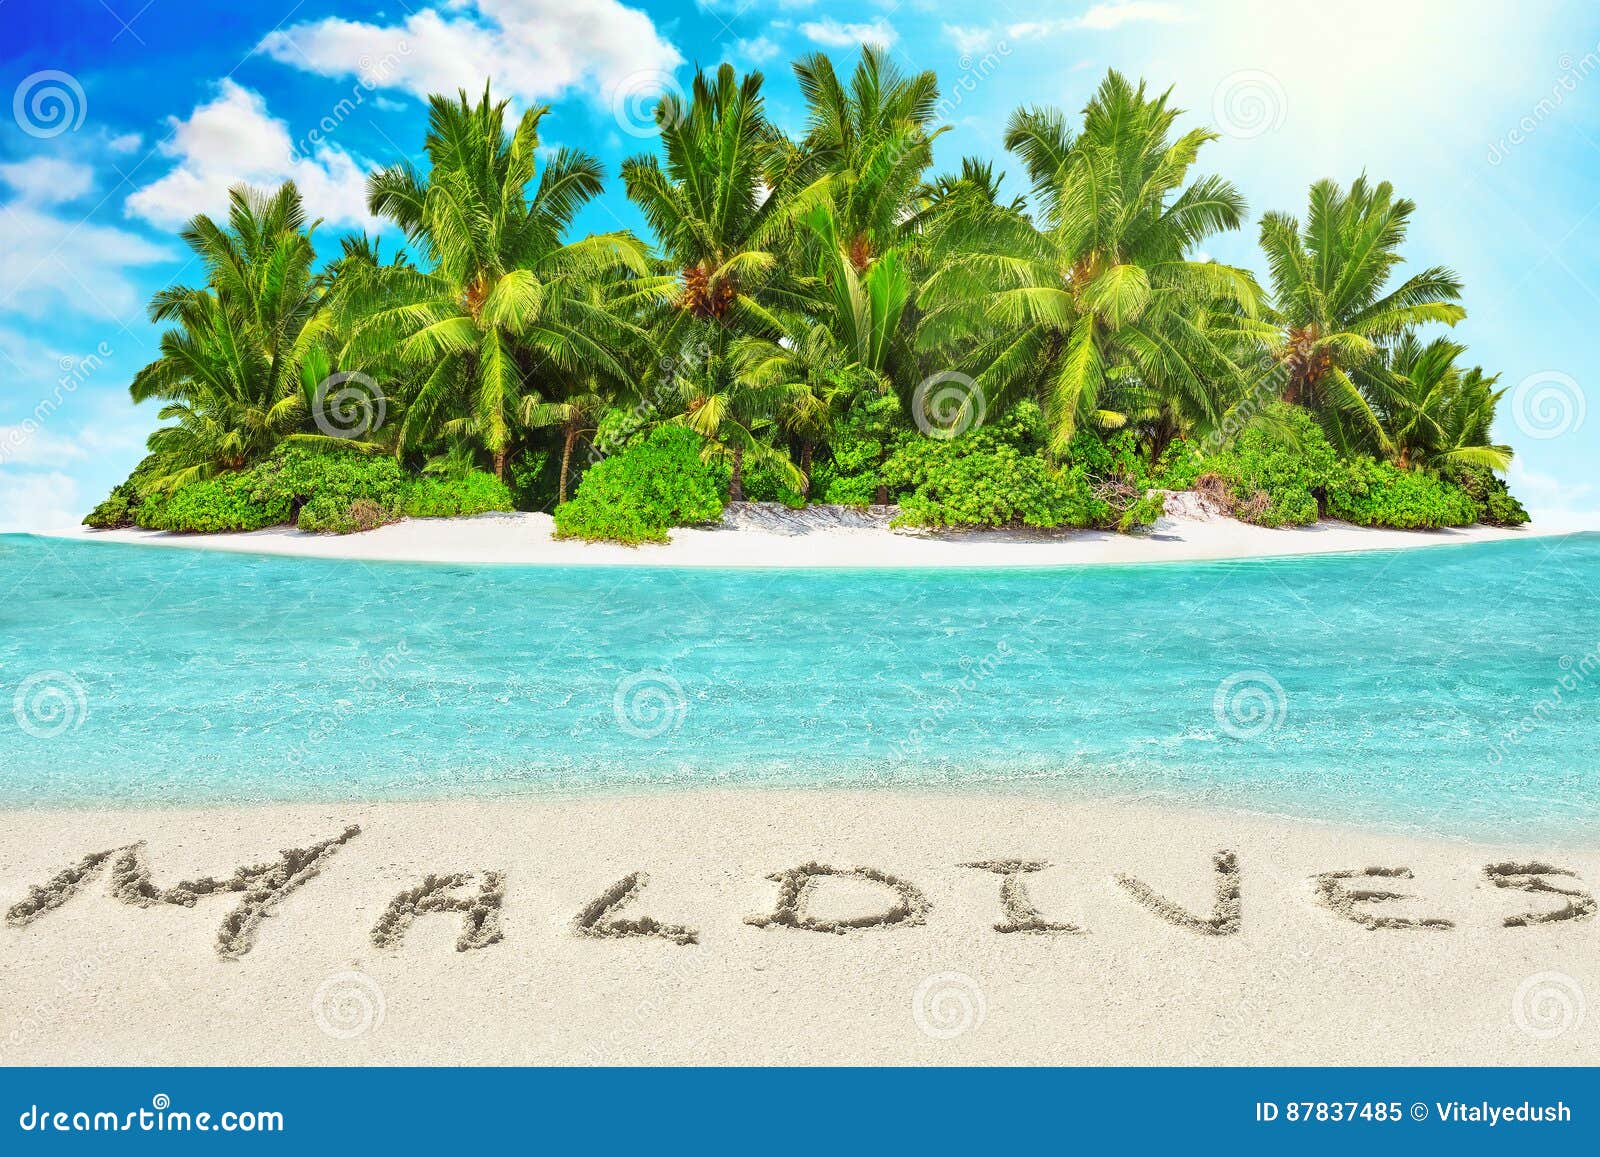 Hel tropisk ö inom atoll i det tropiska havet och inscrip. Hel tropisk ö inom atoll i det tropiska havet Obebodd och lös subtropisk ö med palmträd Inskrift`-Maldiverna ` i sanden på en tropisk ö, Maldiverna